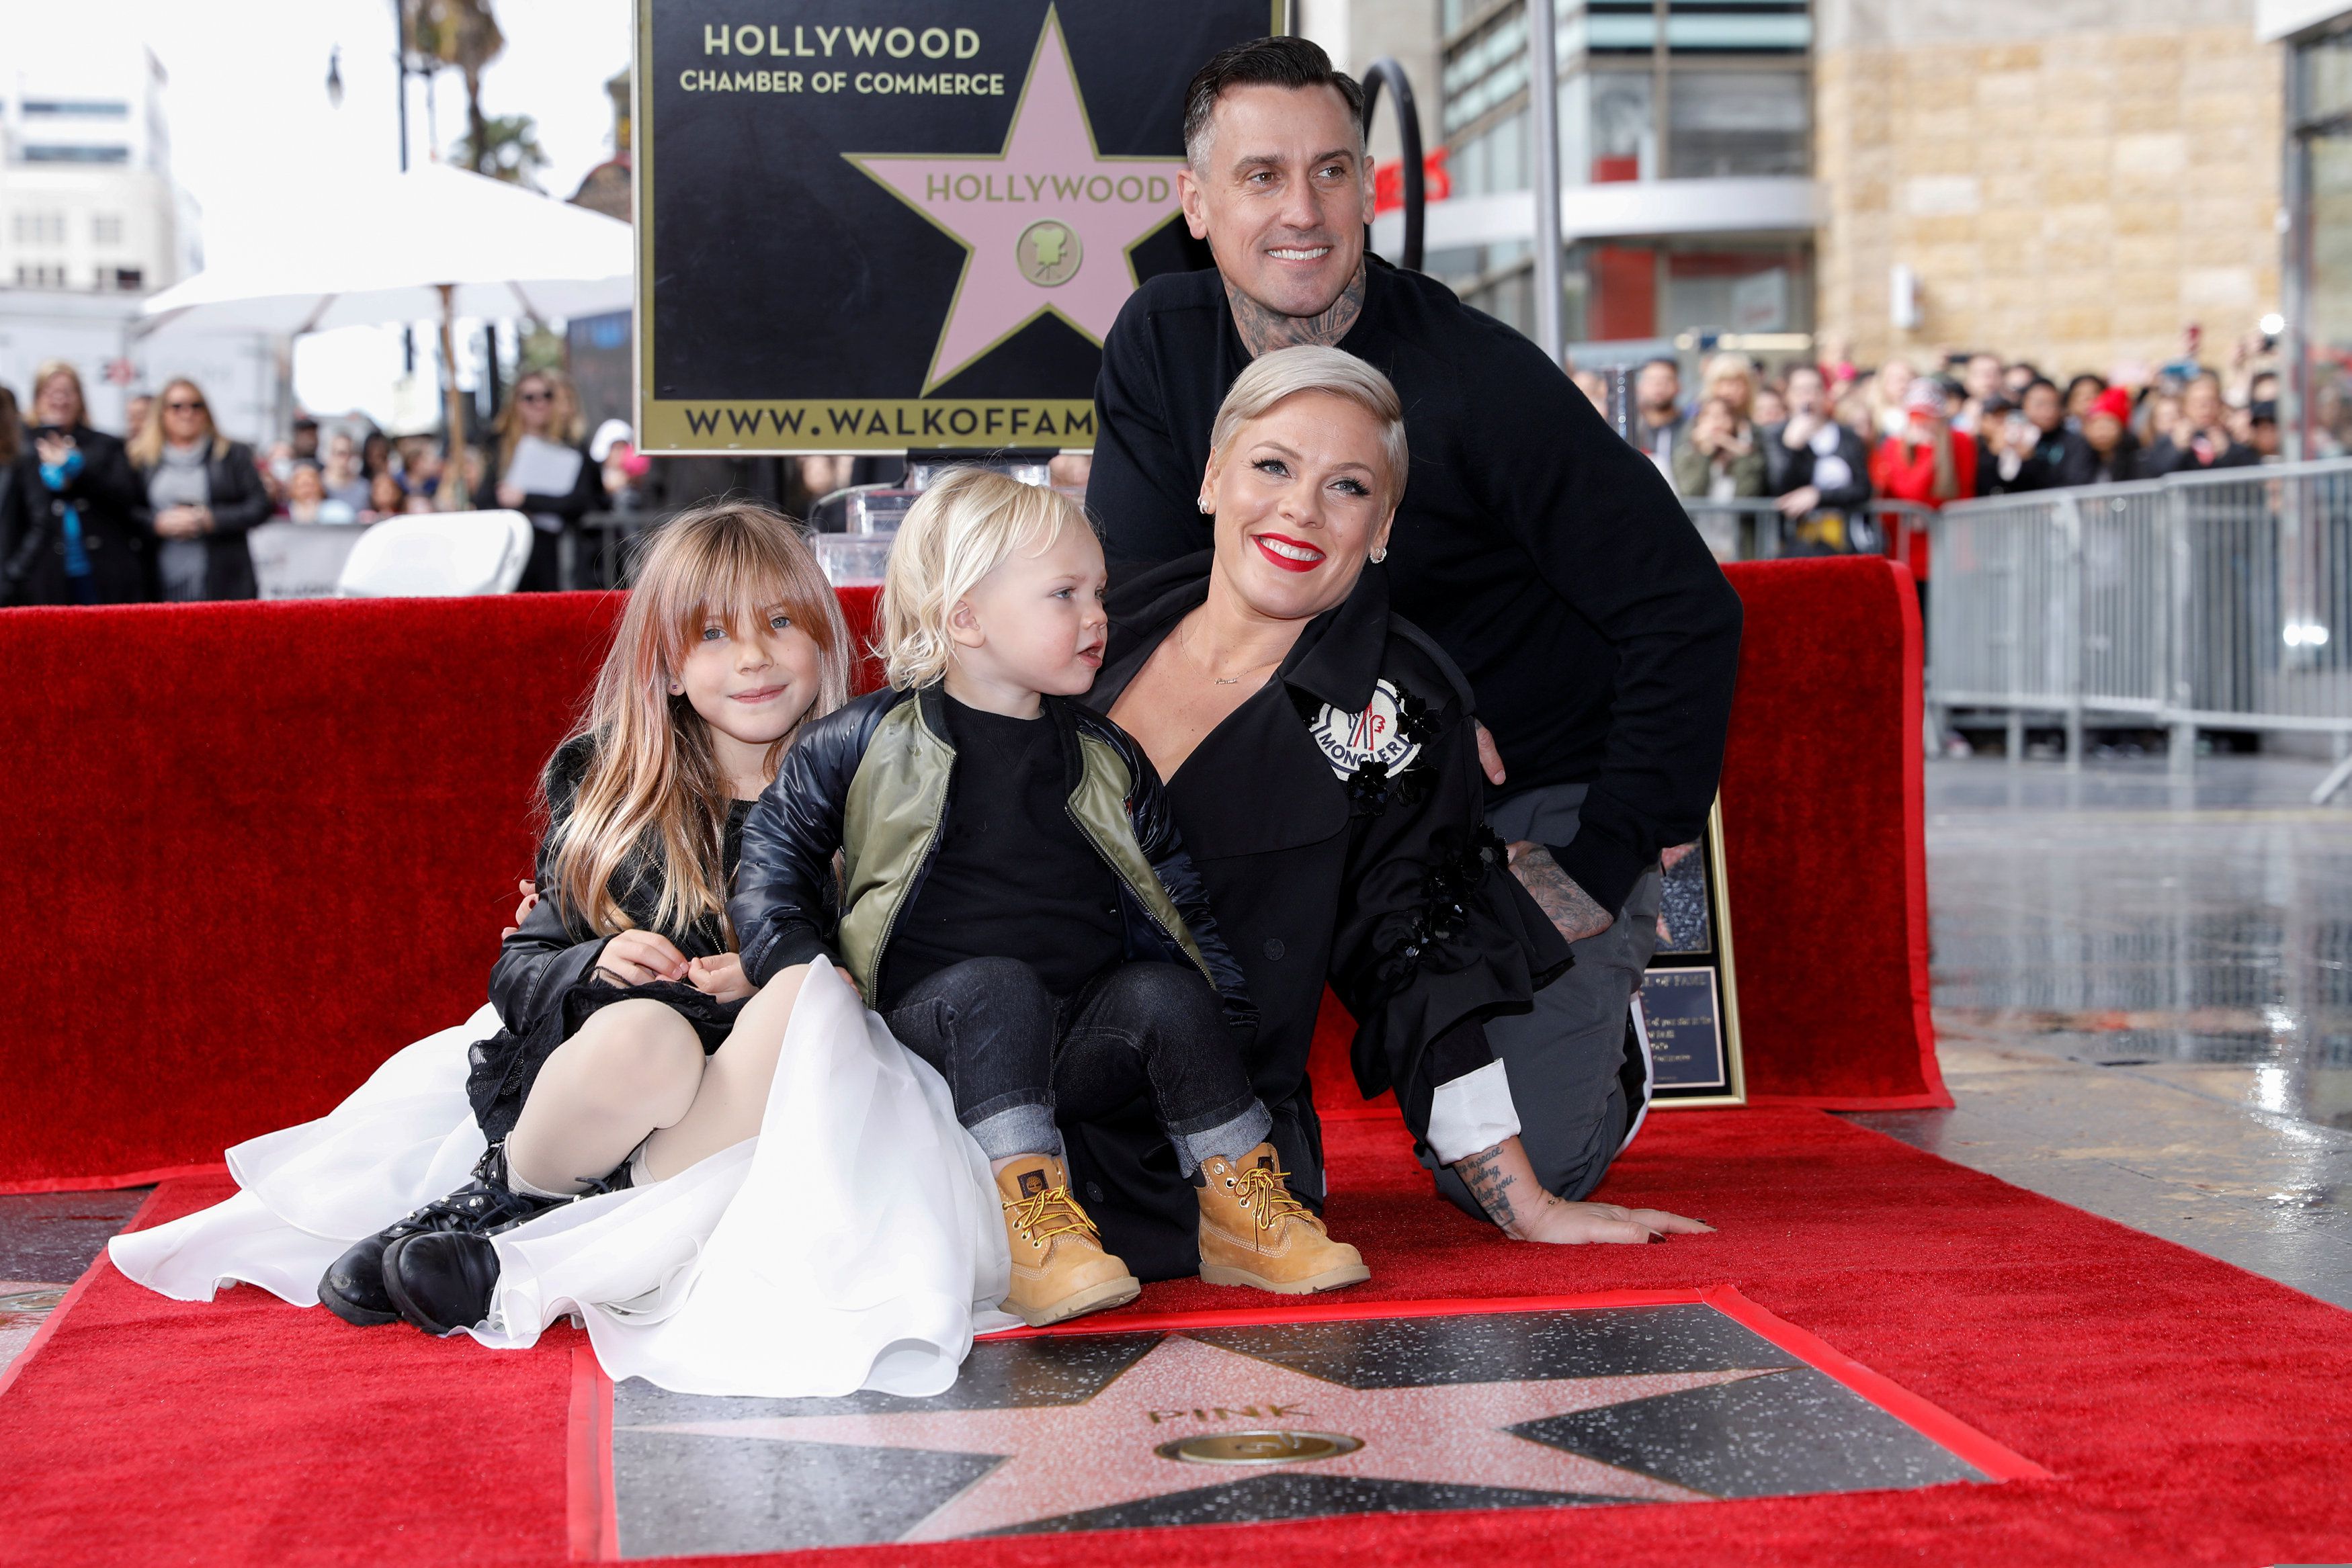 La cantante y compositora Pink posa para una fotografía con su esposo Carey Hart y sus dos hijos Willow y Jameson mientras recibe una estrella en el Paseo de la Fama de Hollywood en Los Ángeles, California, EE.UU., el 5 de febrero de 2019. REUTERS/Mike Blake